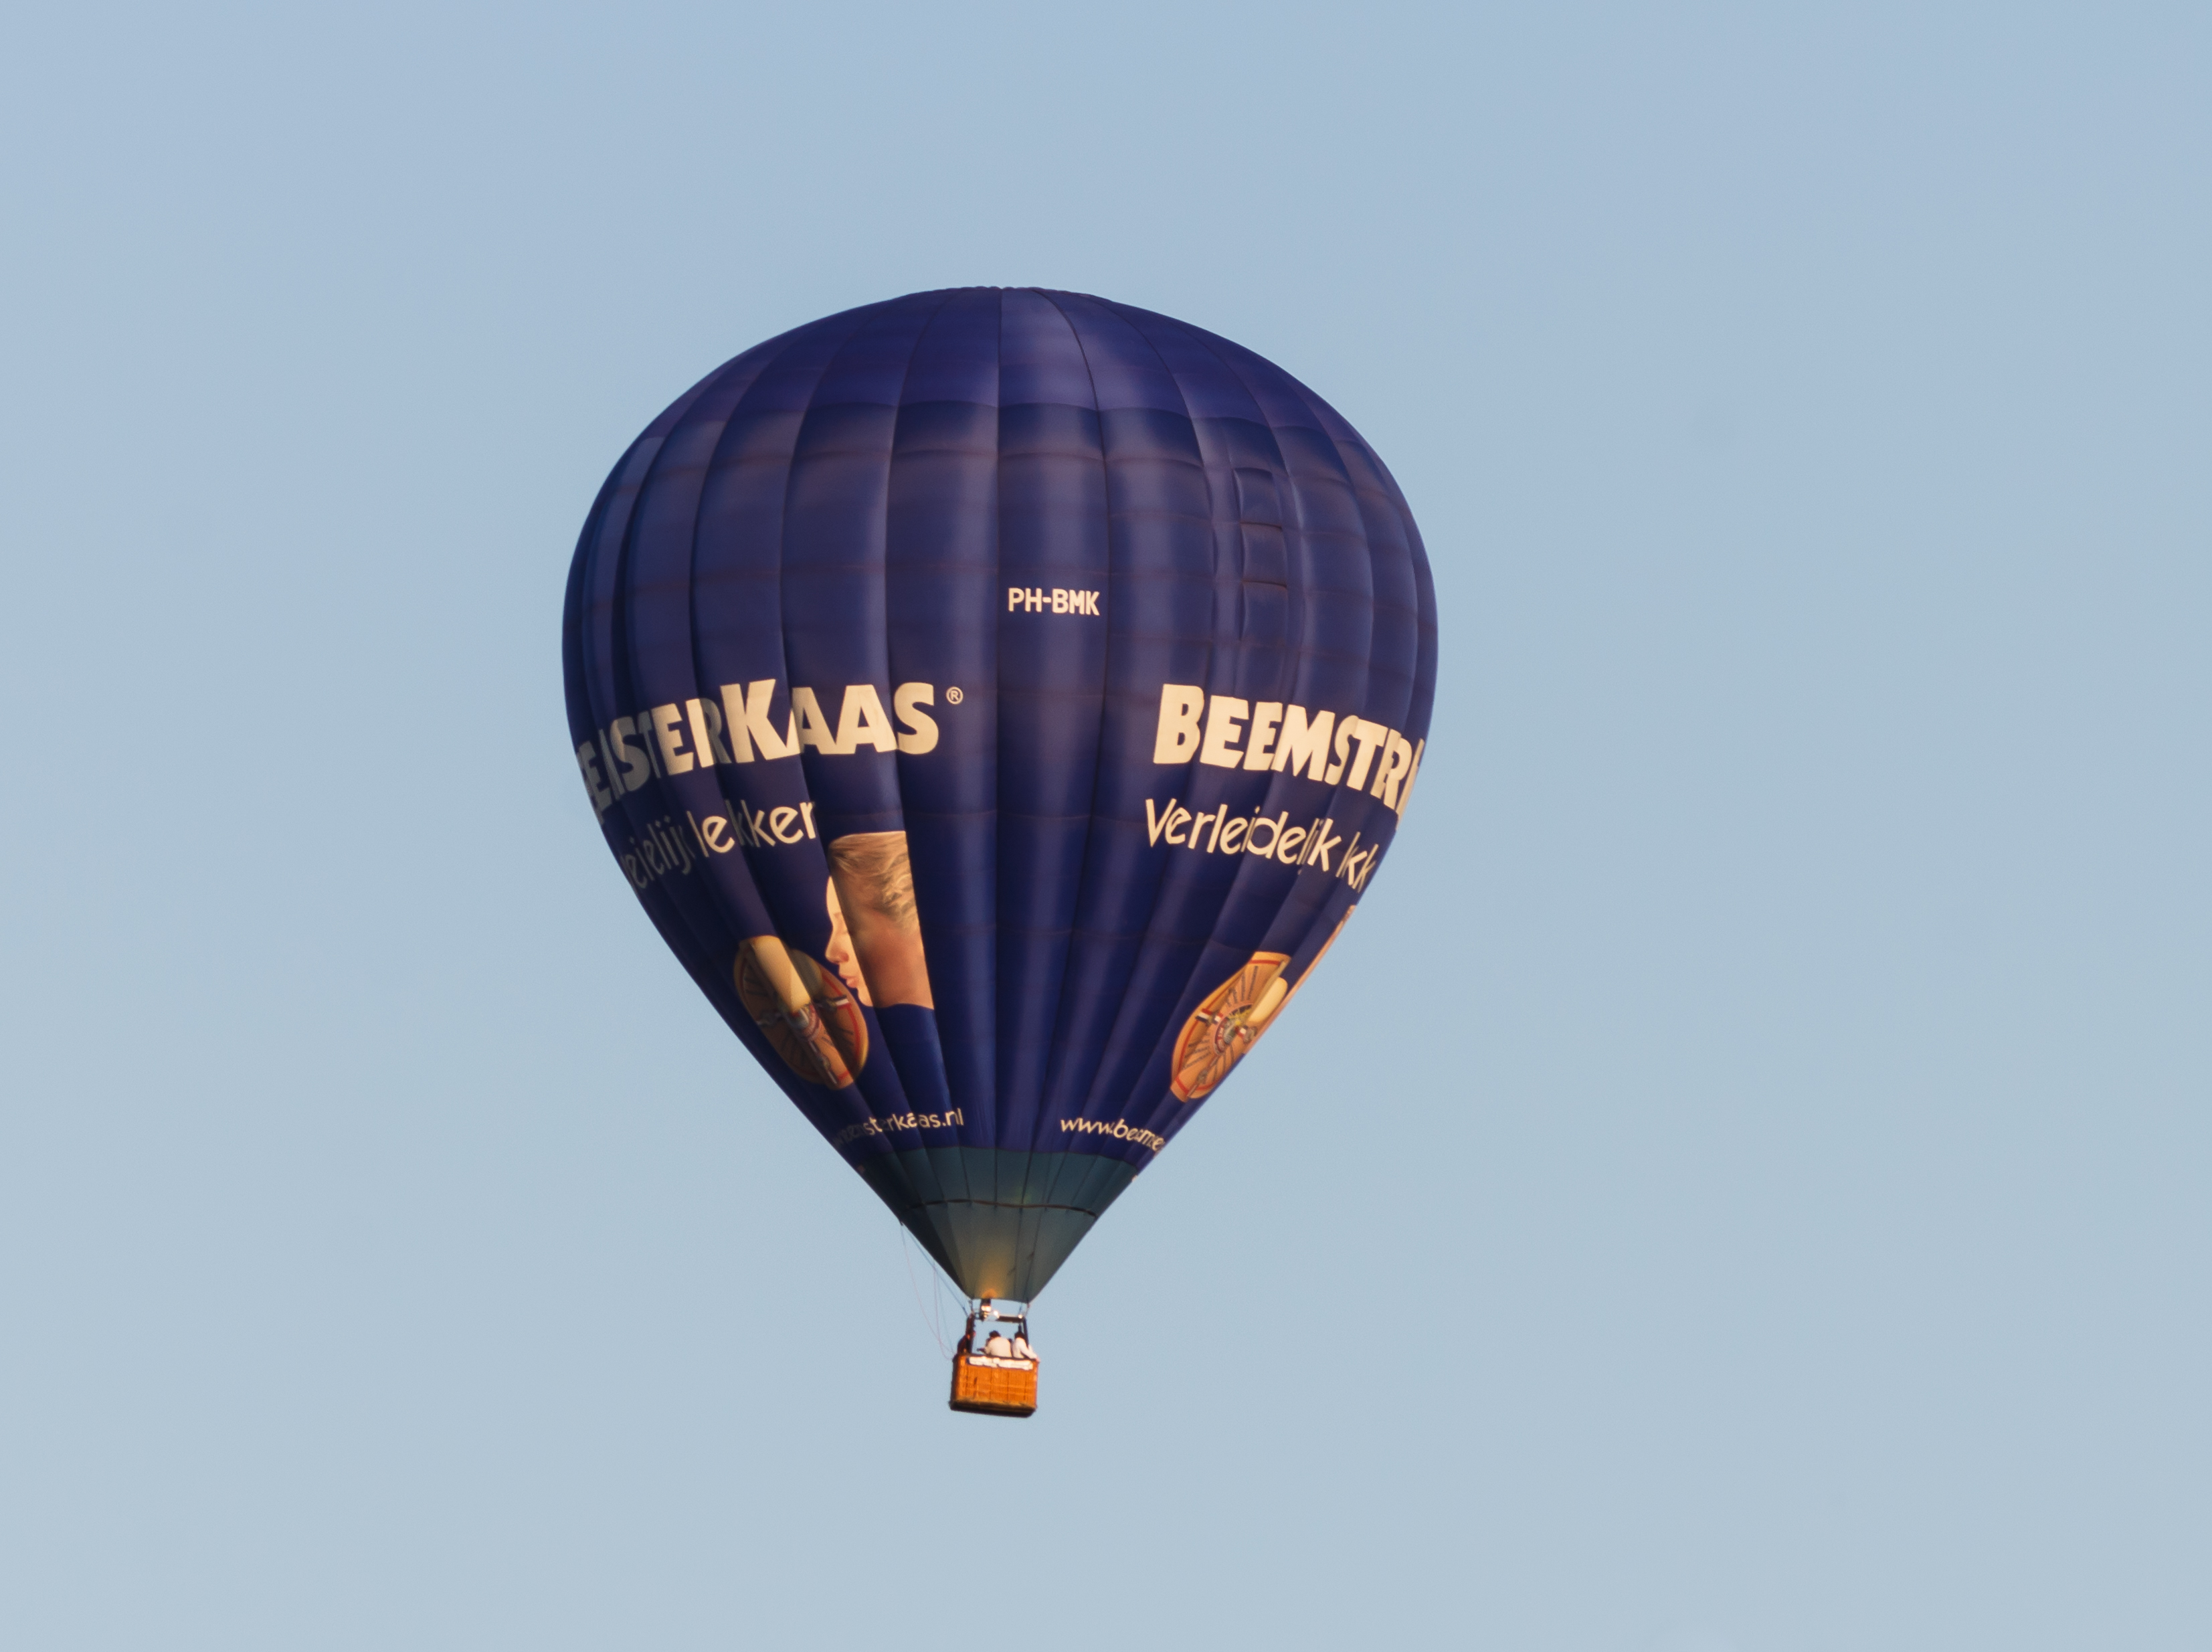 PH-BMK ballon op de Jaarlijkse Friese ballonfeesten in Joure 001